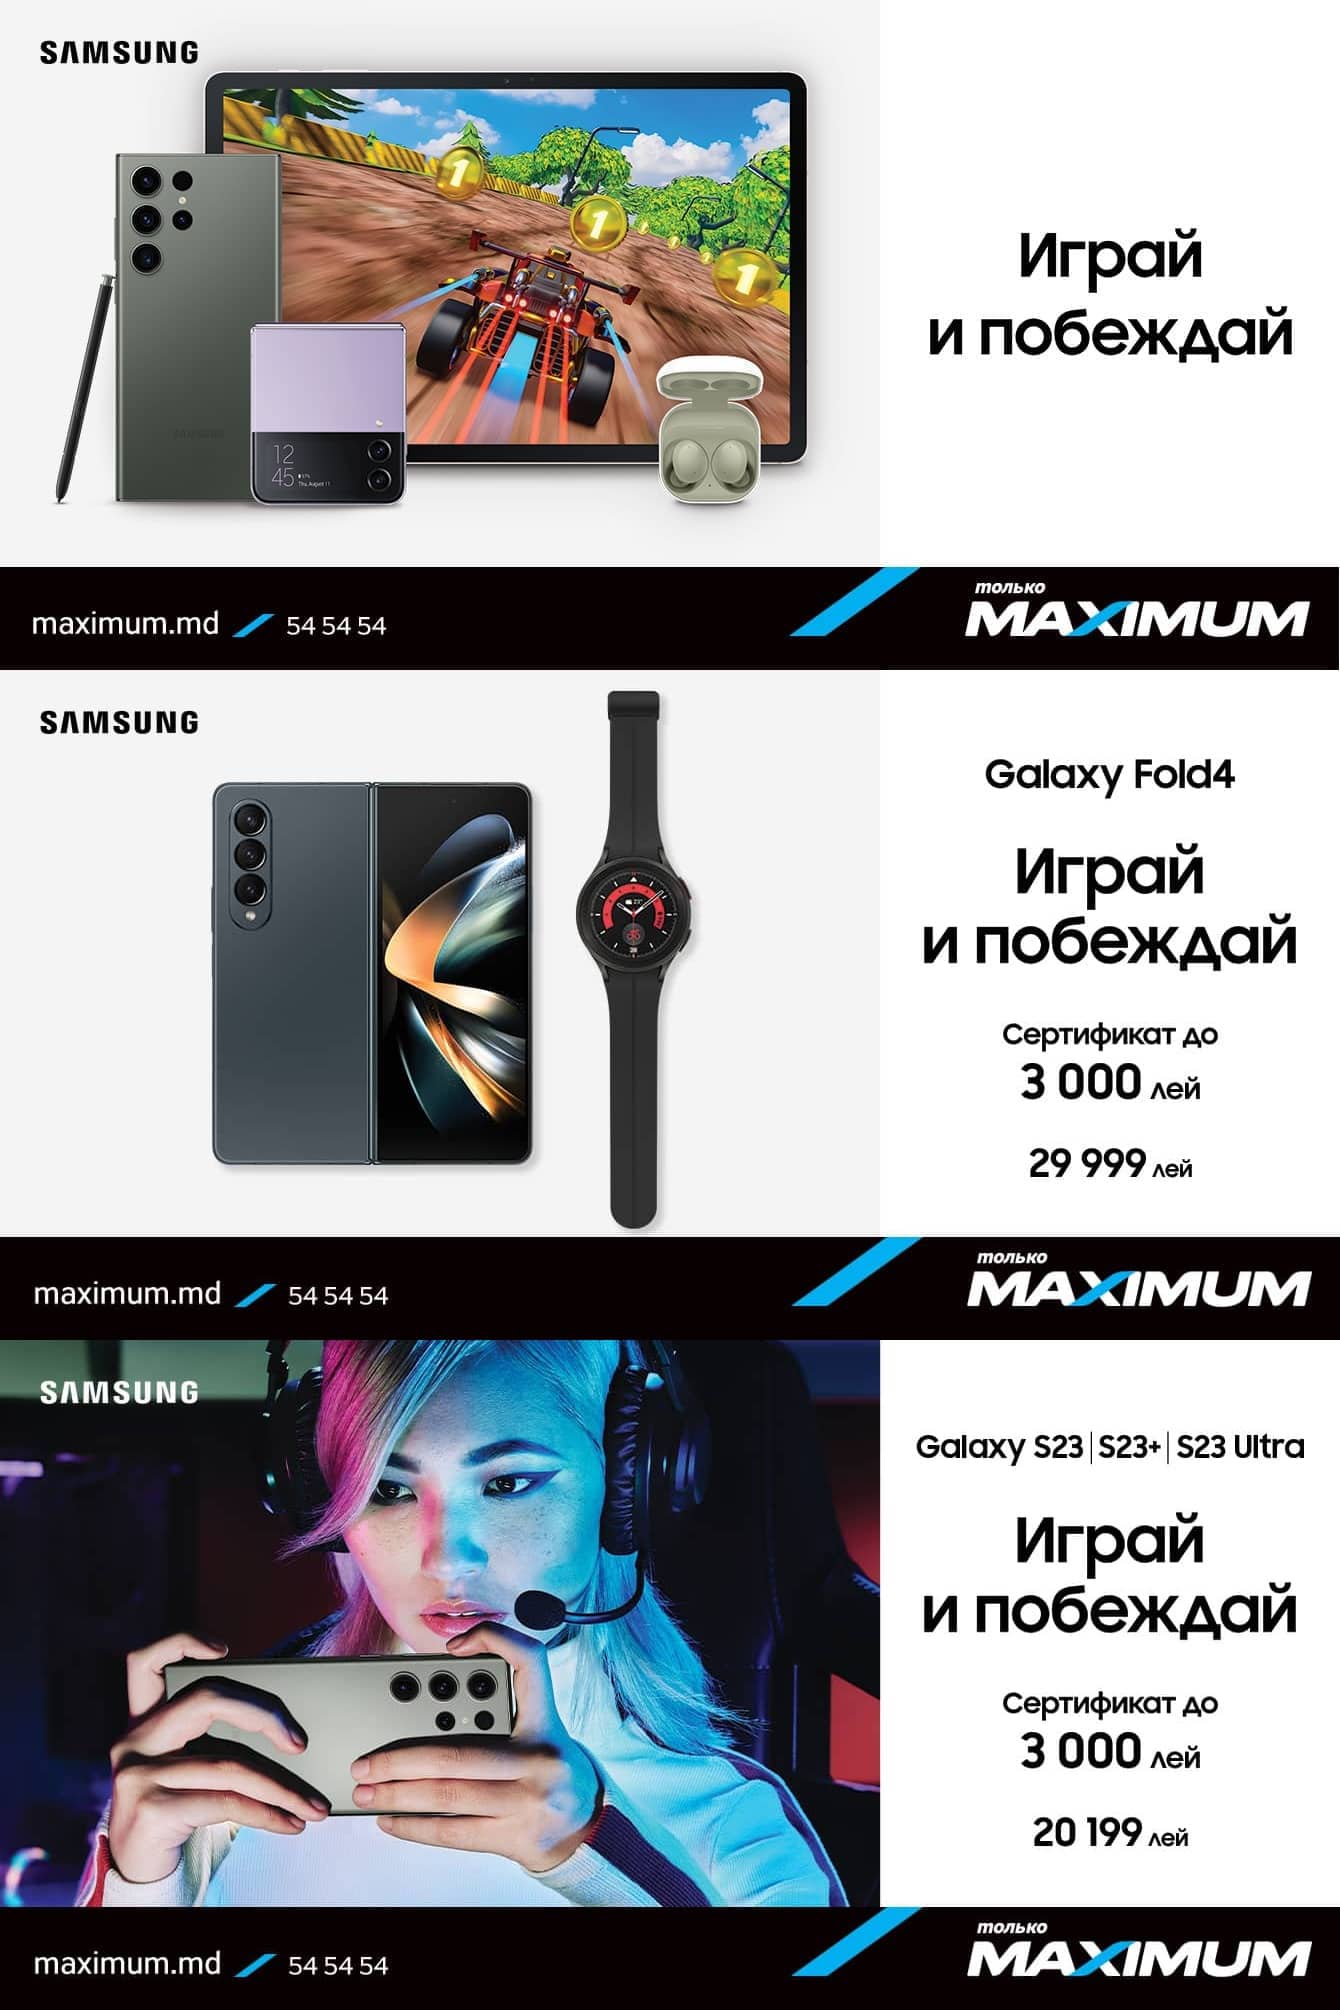 Maximum - Joacă și câștigă cu Samsung Galaxy - 1